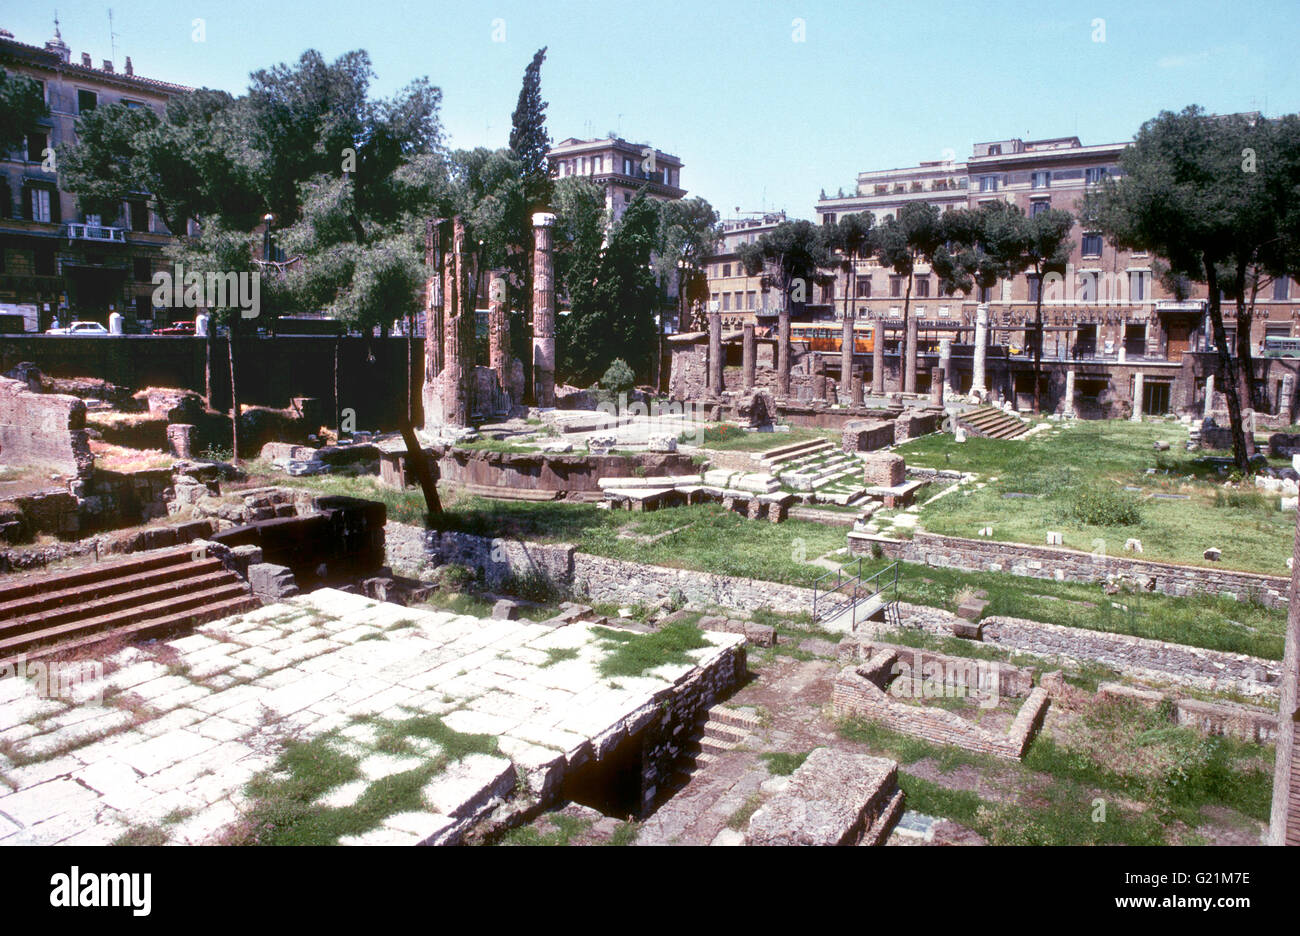 FORUM ROMANUM rovine da tempi antichi Foto Stock